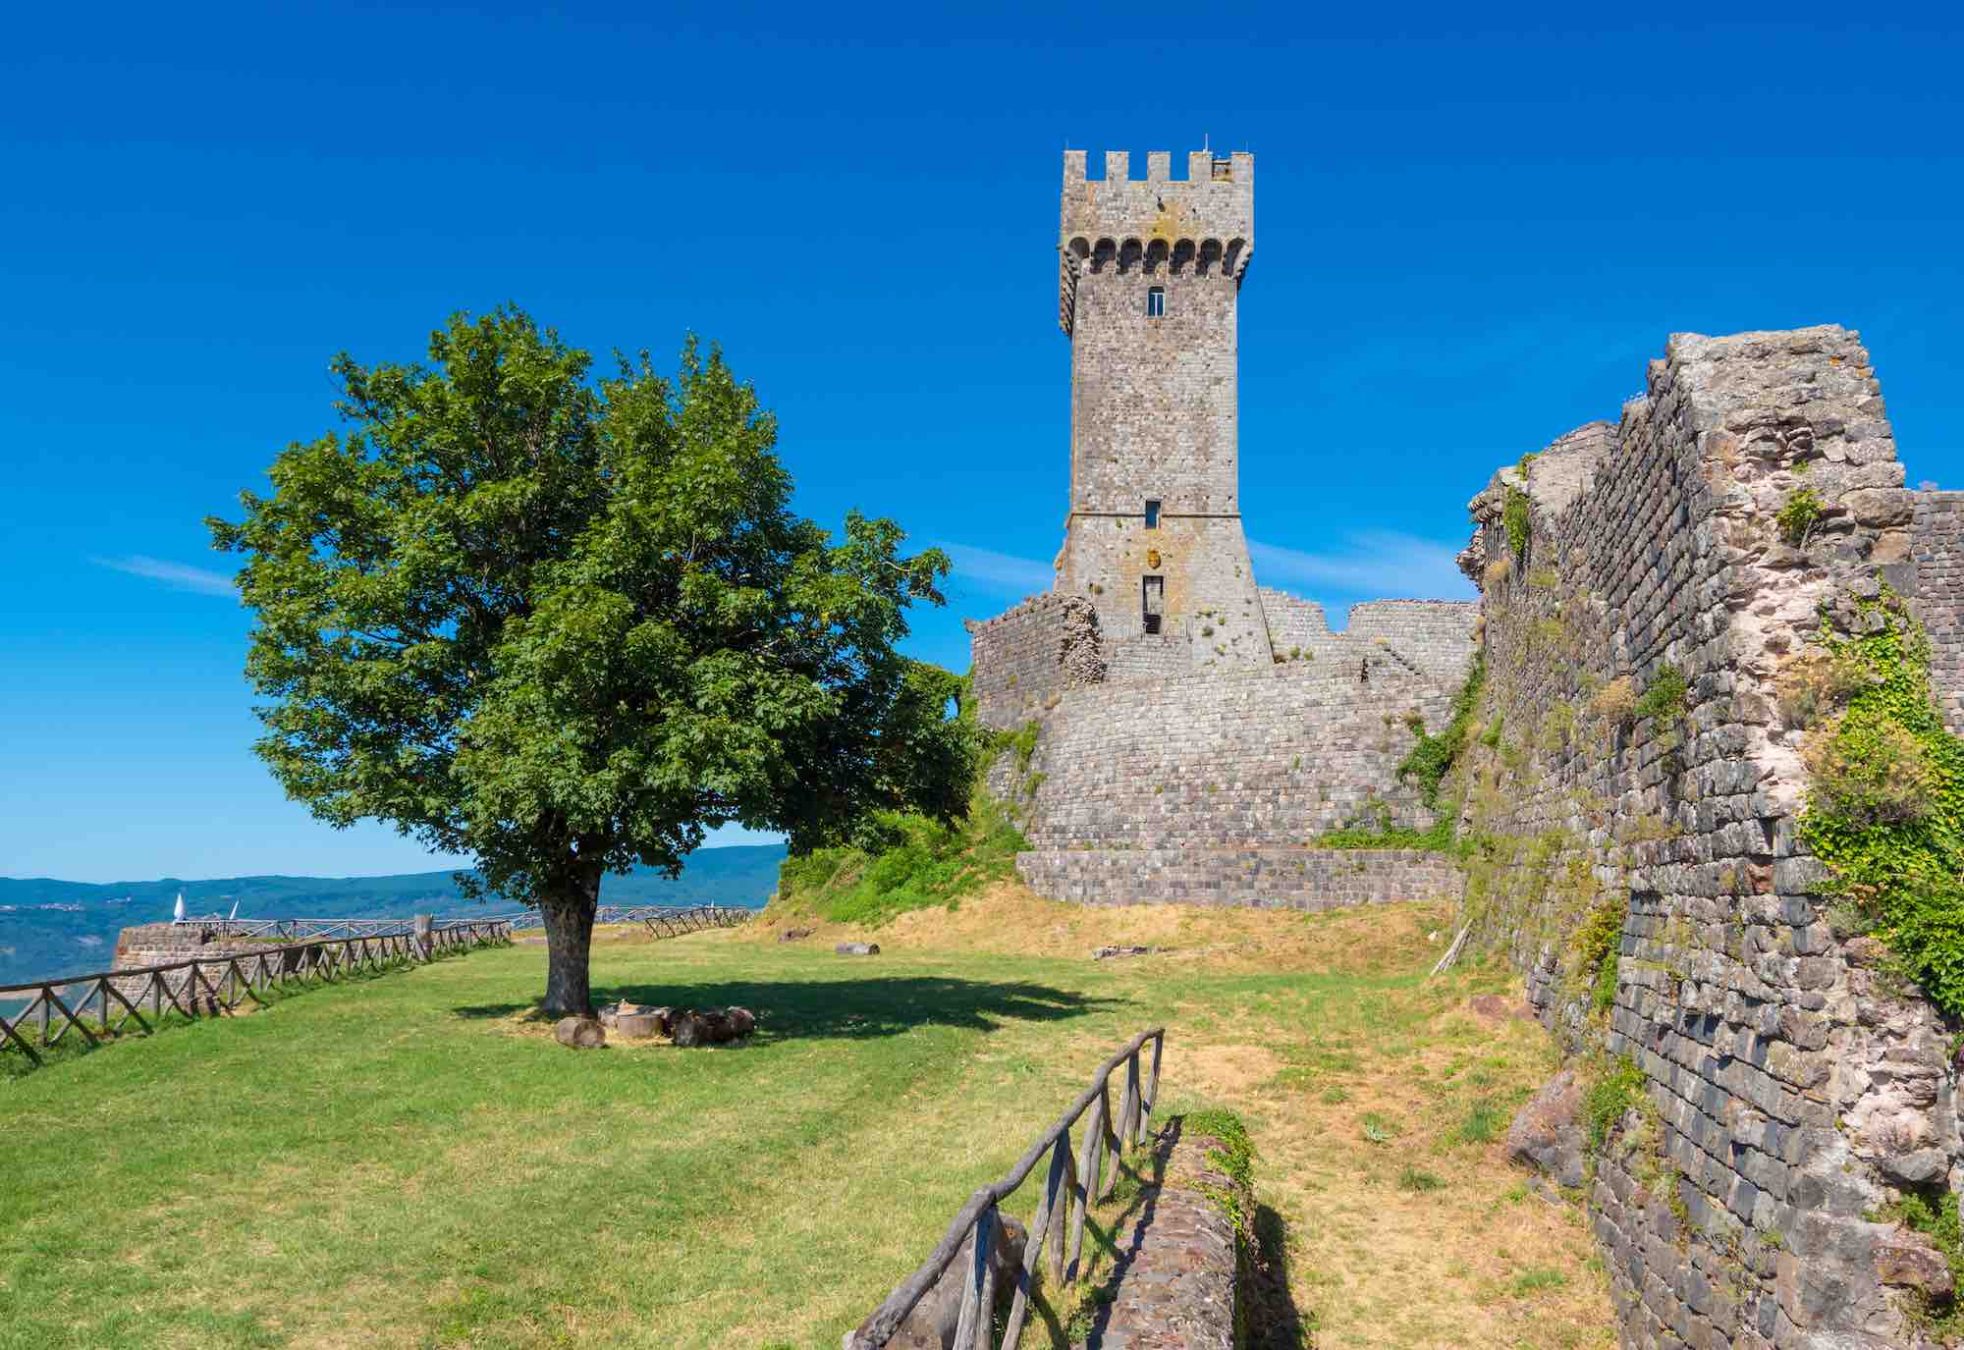 La torre della Rocca di Radicofani è legata alla storia di Ghino di Tacco, il Robin Hood della Toscana